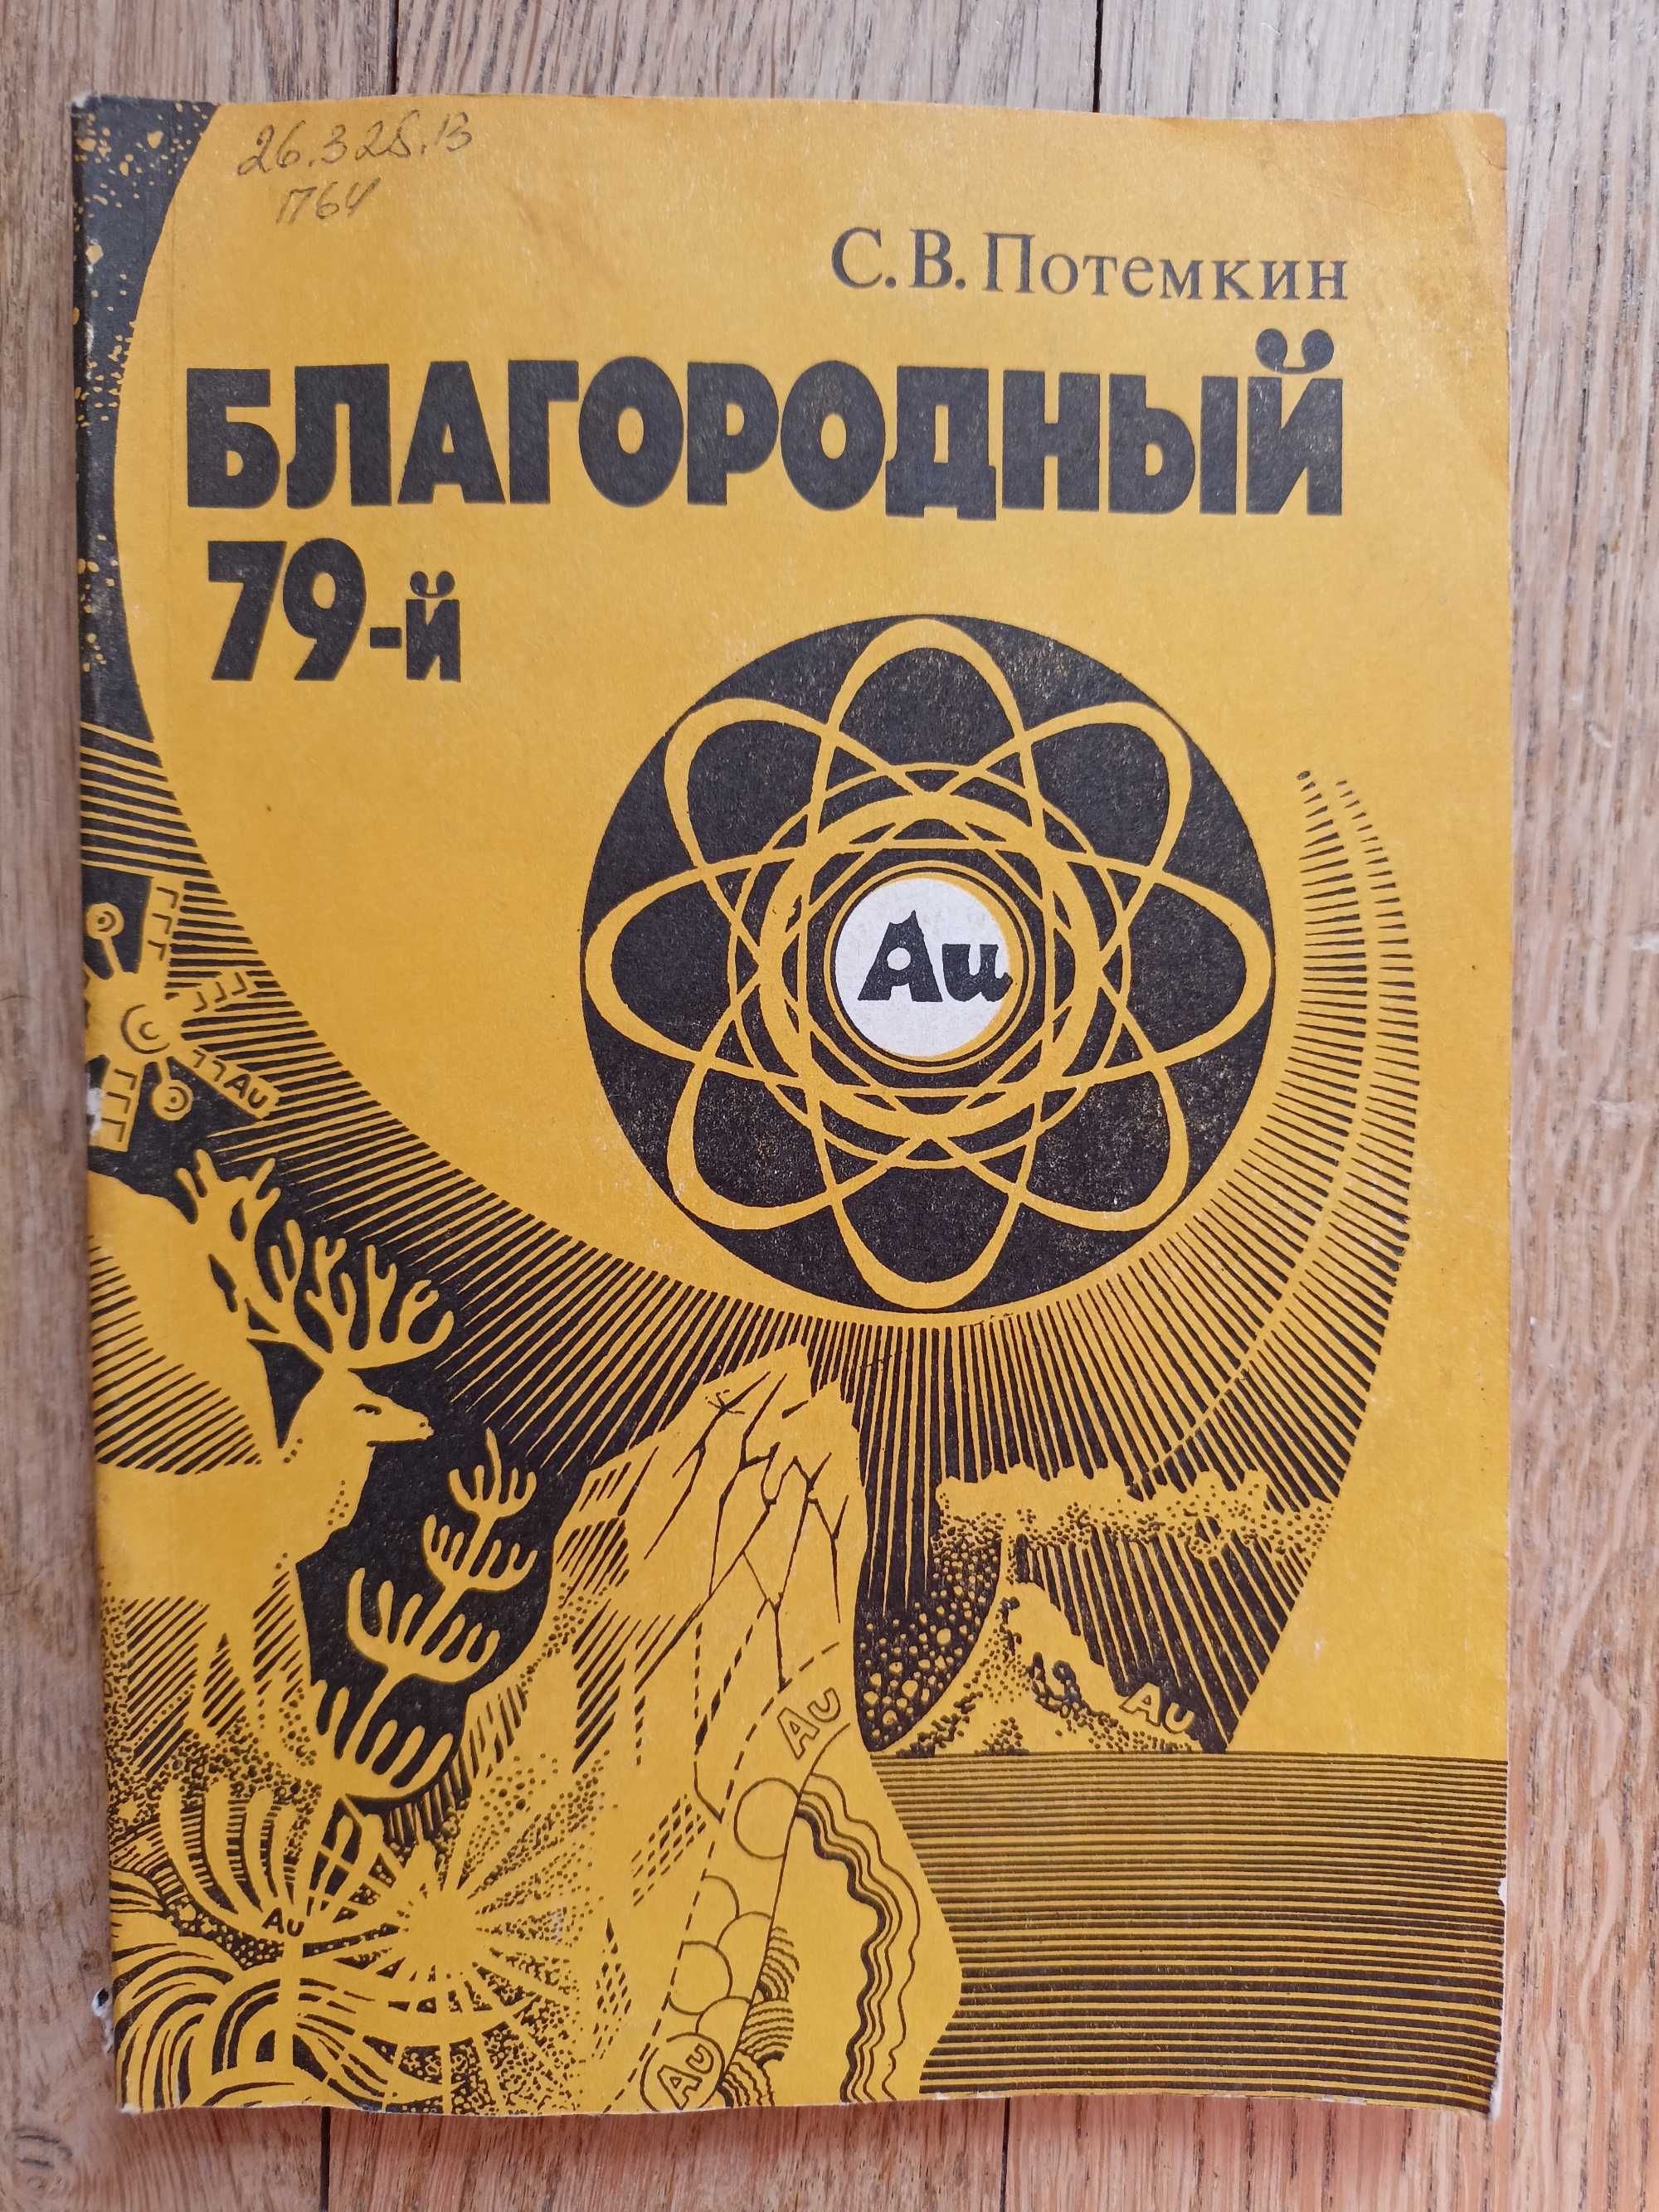 Благородный 79-й. Книга про золото. С. В. Потемкин.